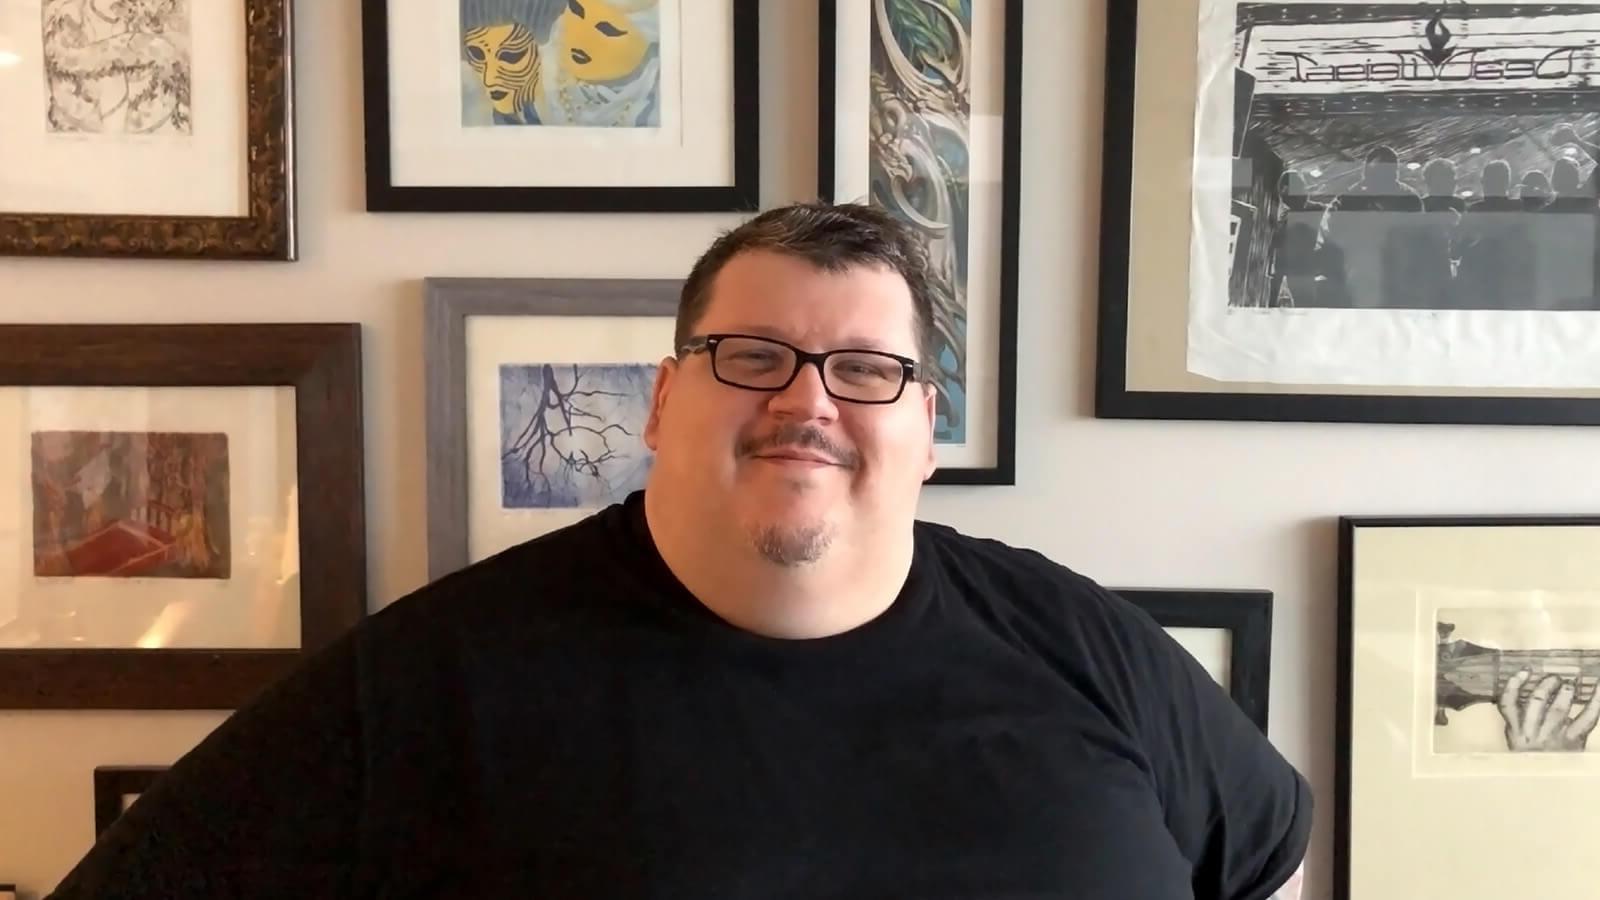 一个面带微笑的男人戴着眼镜，穿着黑色t恤，坐在墙上挂满了镶框的画作.